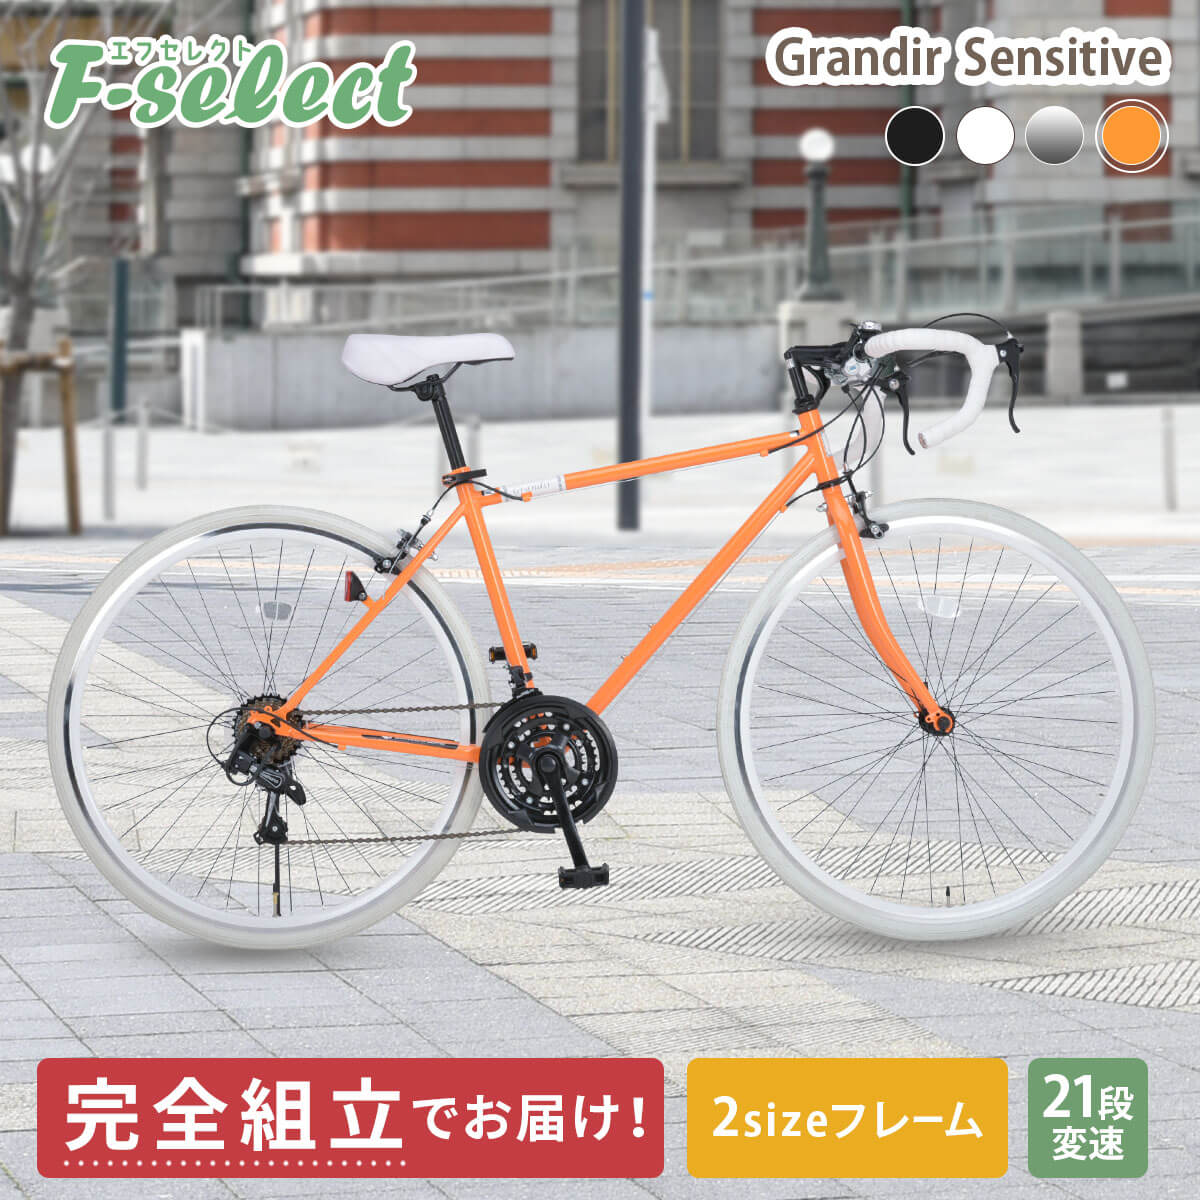 ロードバイク 自転車 完成品出荷 / 置き配可能 700×28C シマノ21段変速 2サイズフレーム 初心者 グランディール センシティブ  Grandir Sensitive